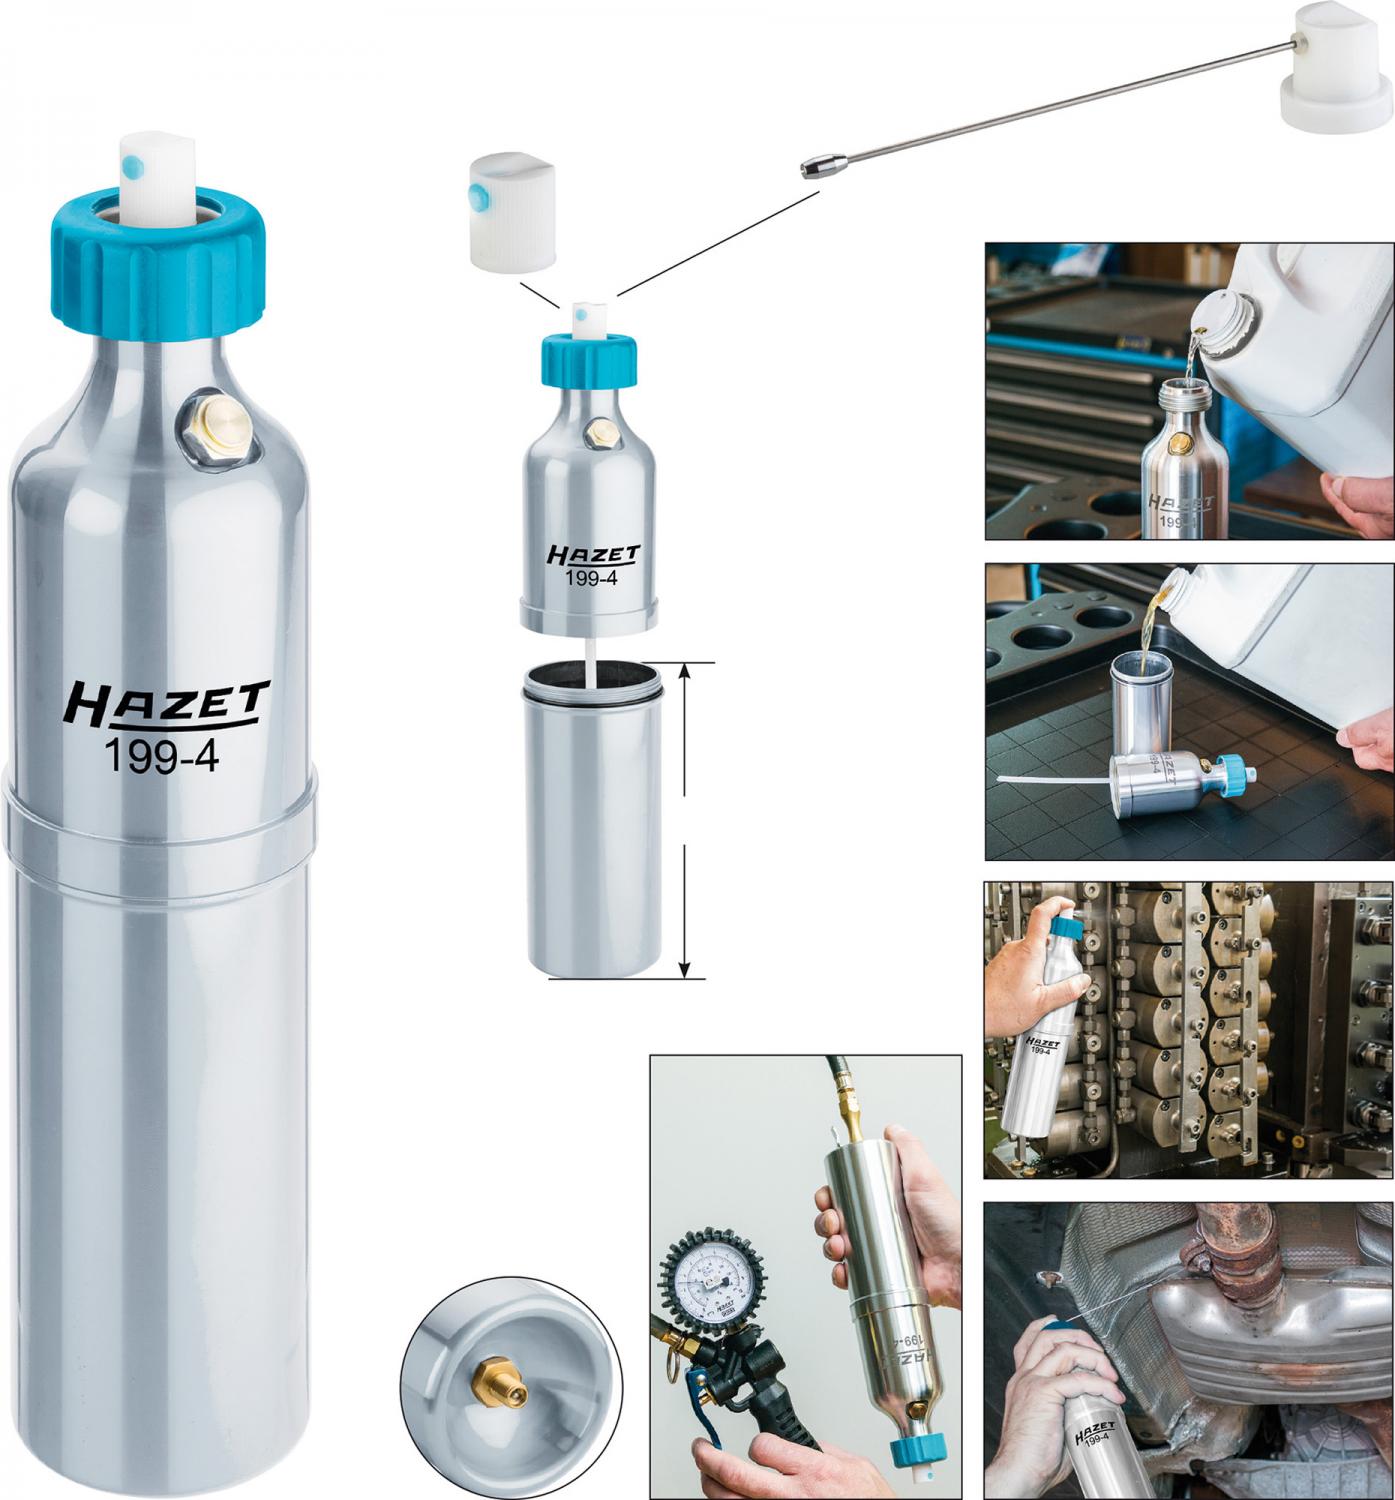 Pressurized Spray Bottle - HAZET 199N1